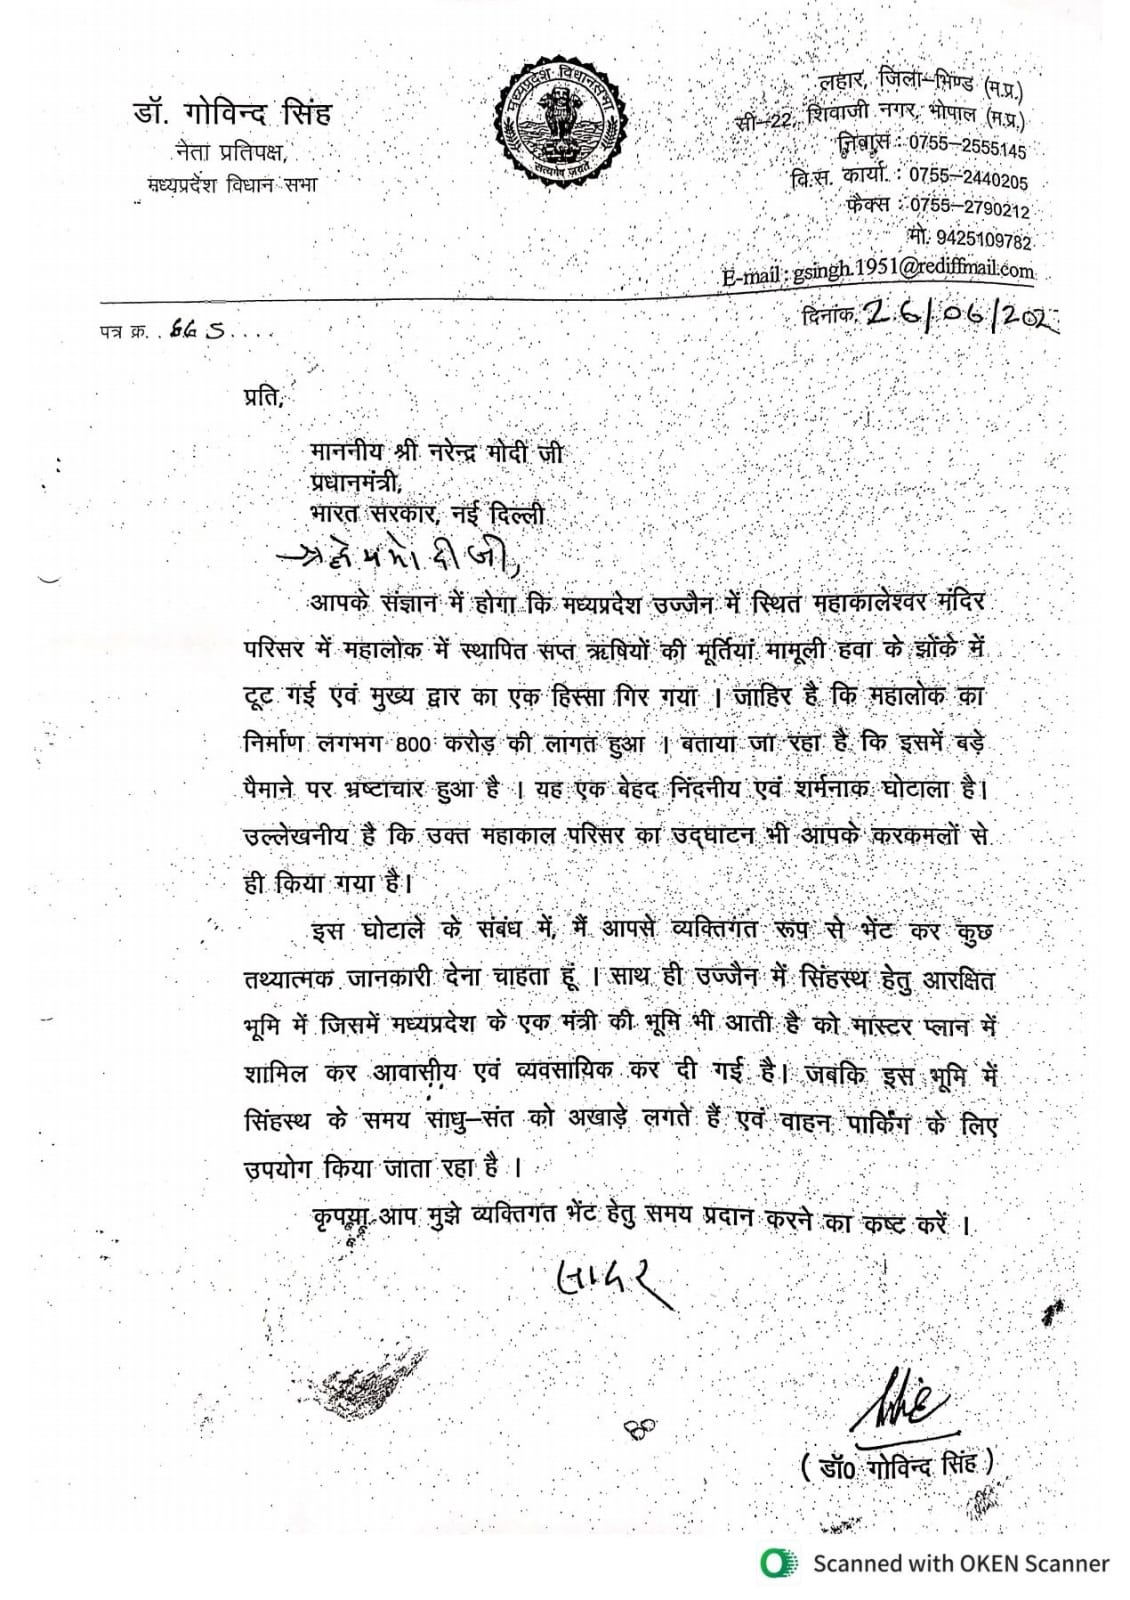 MP News : नेता प्रतिपक्ष डॉ गोविंद सिंह ने पीएम मोदी को लिखा पत्र, मिलने के लिए मांगा समय